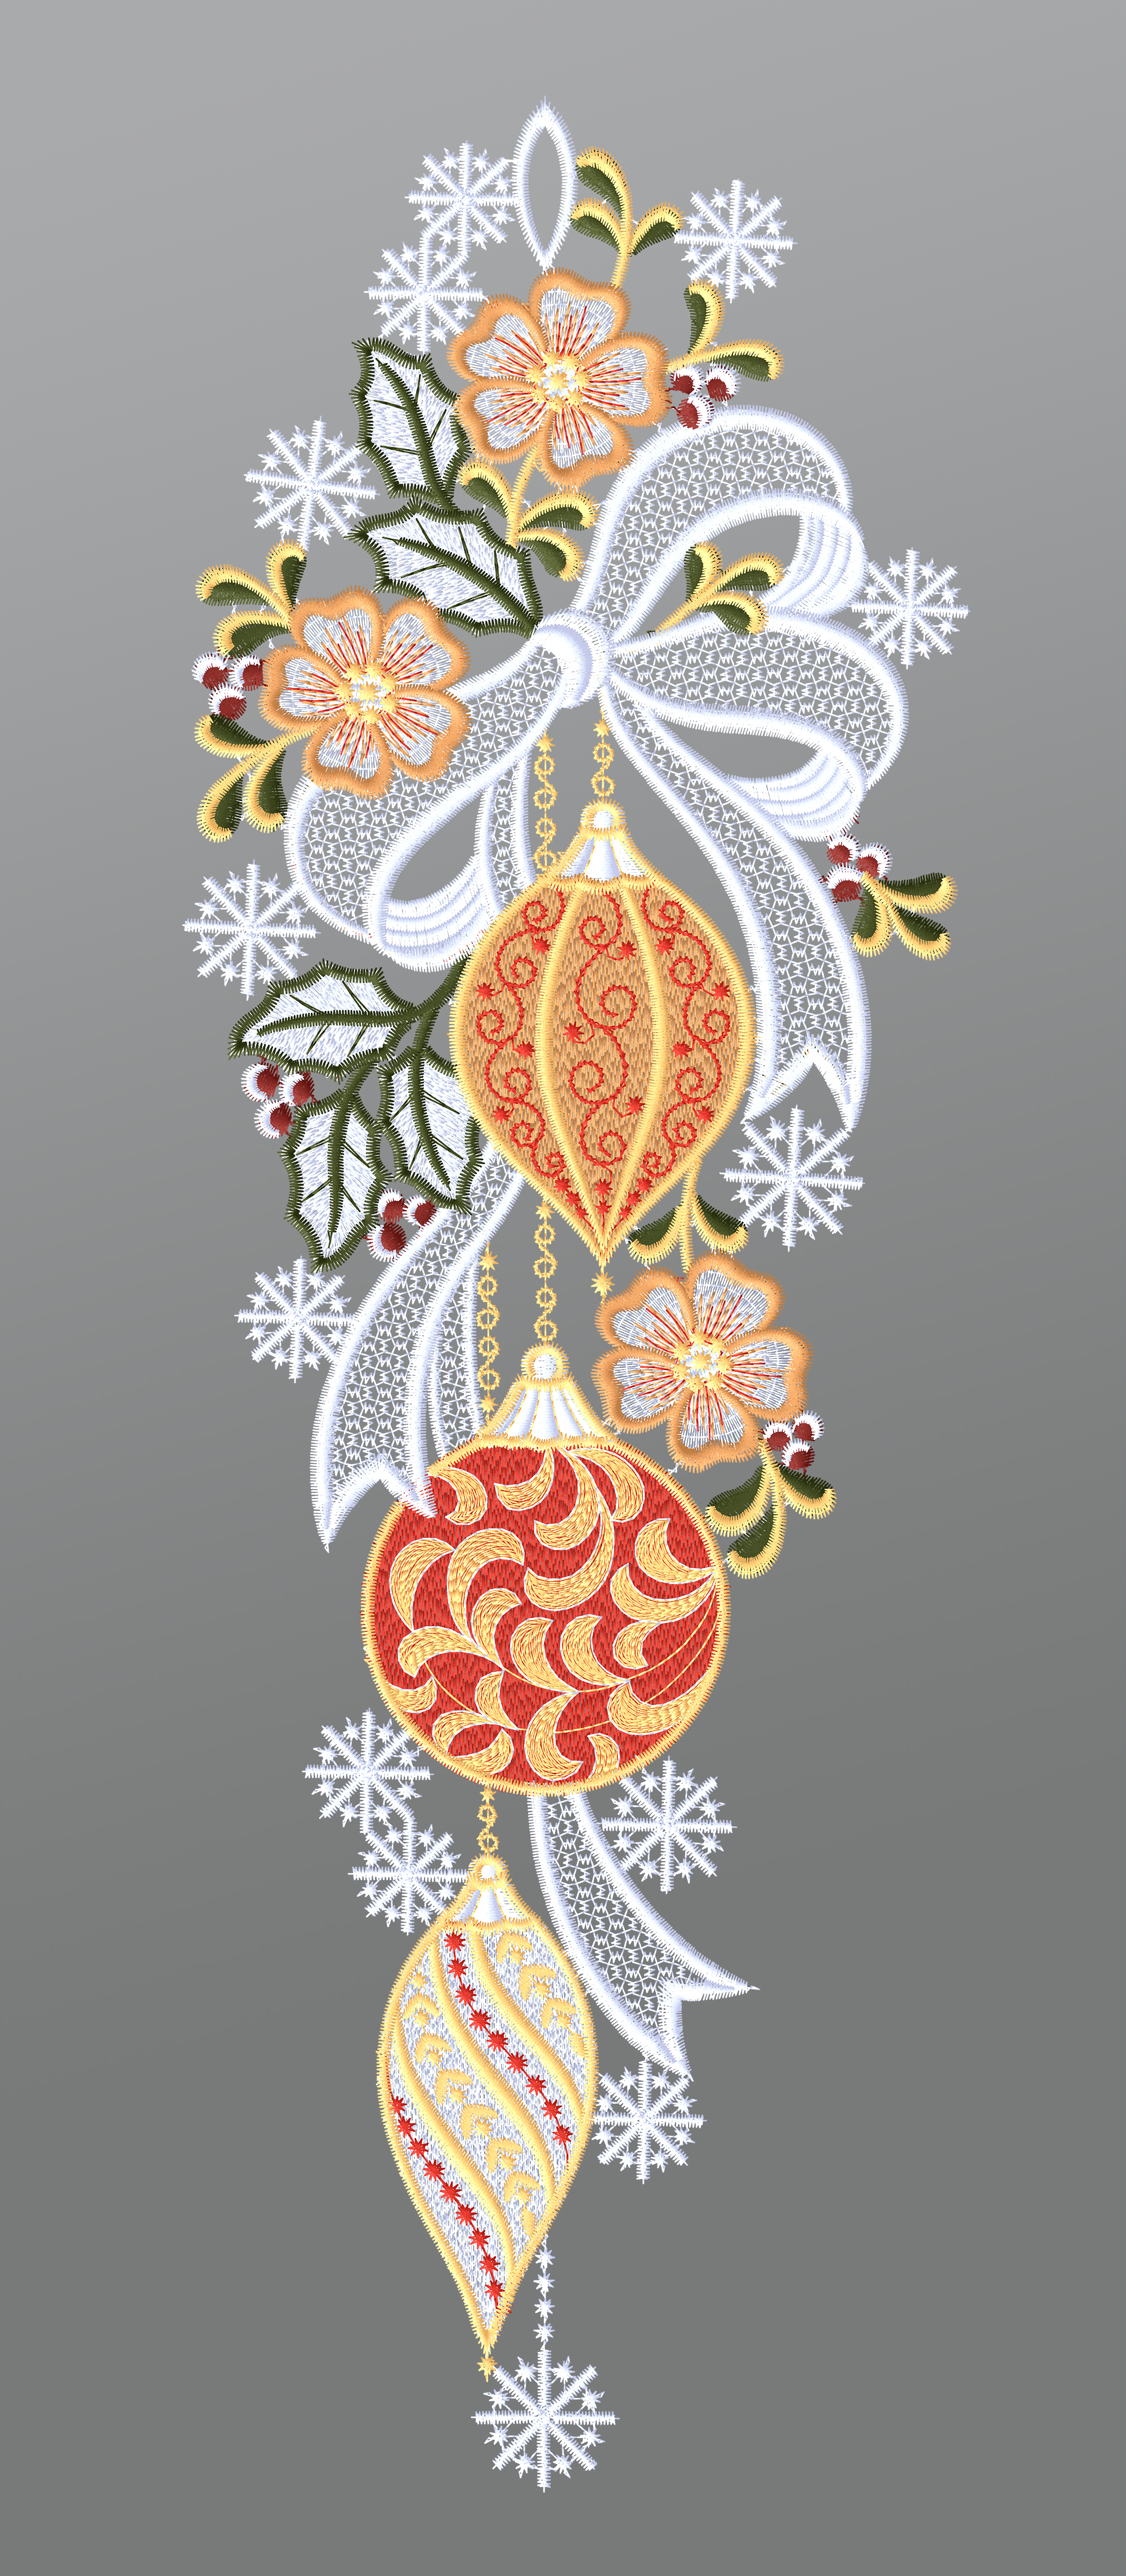 ArtikelbildFensterbild aus Plauener Spitze - Weihnachtsbaumkugeln mit Schleife #1W mehrfarbig